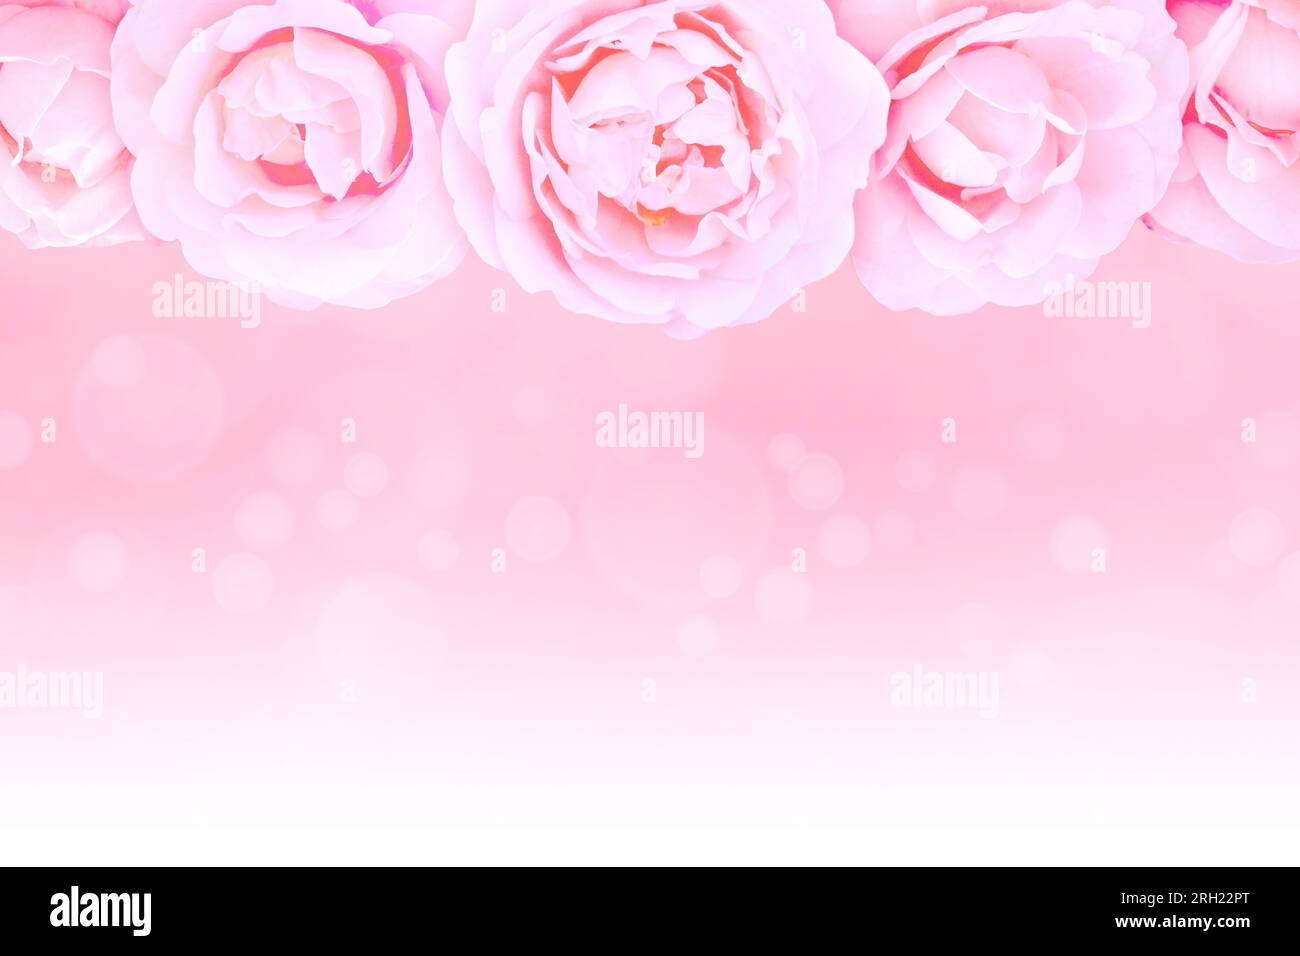 Rosafarbene Rosen und Knospen oben auf dem unscharfen Hintergrund, wobei der Text unten zu Weiß wird. Grußkarte mit Kopierbereich. Stockfoto